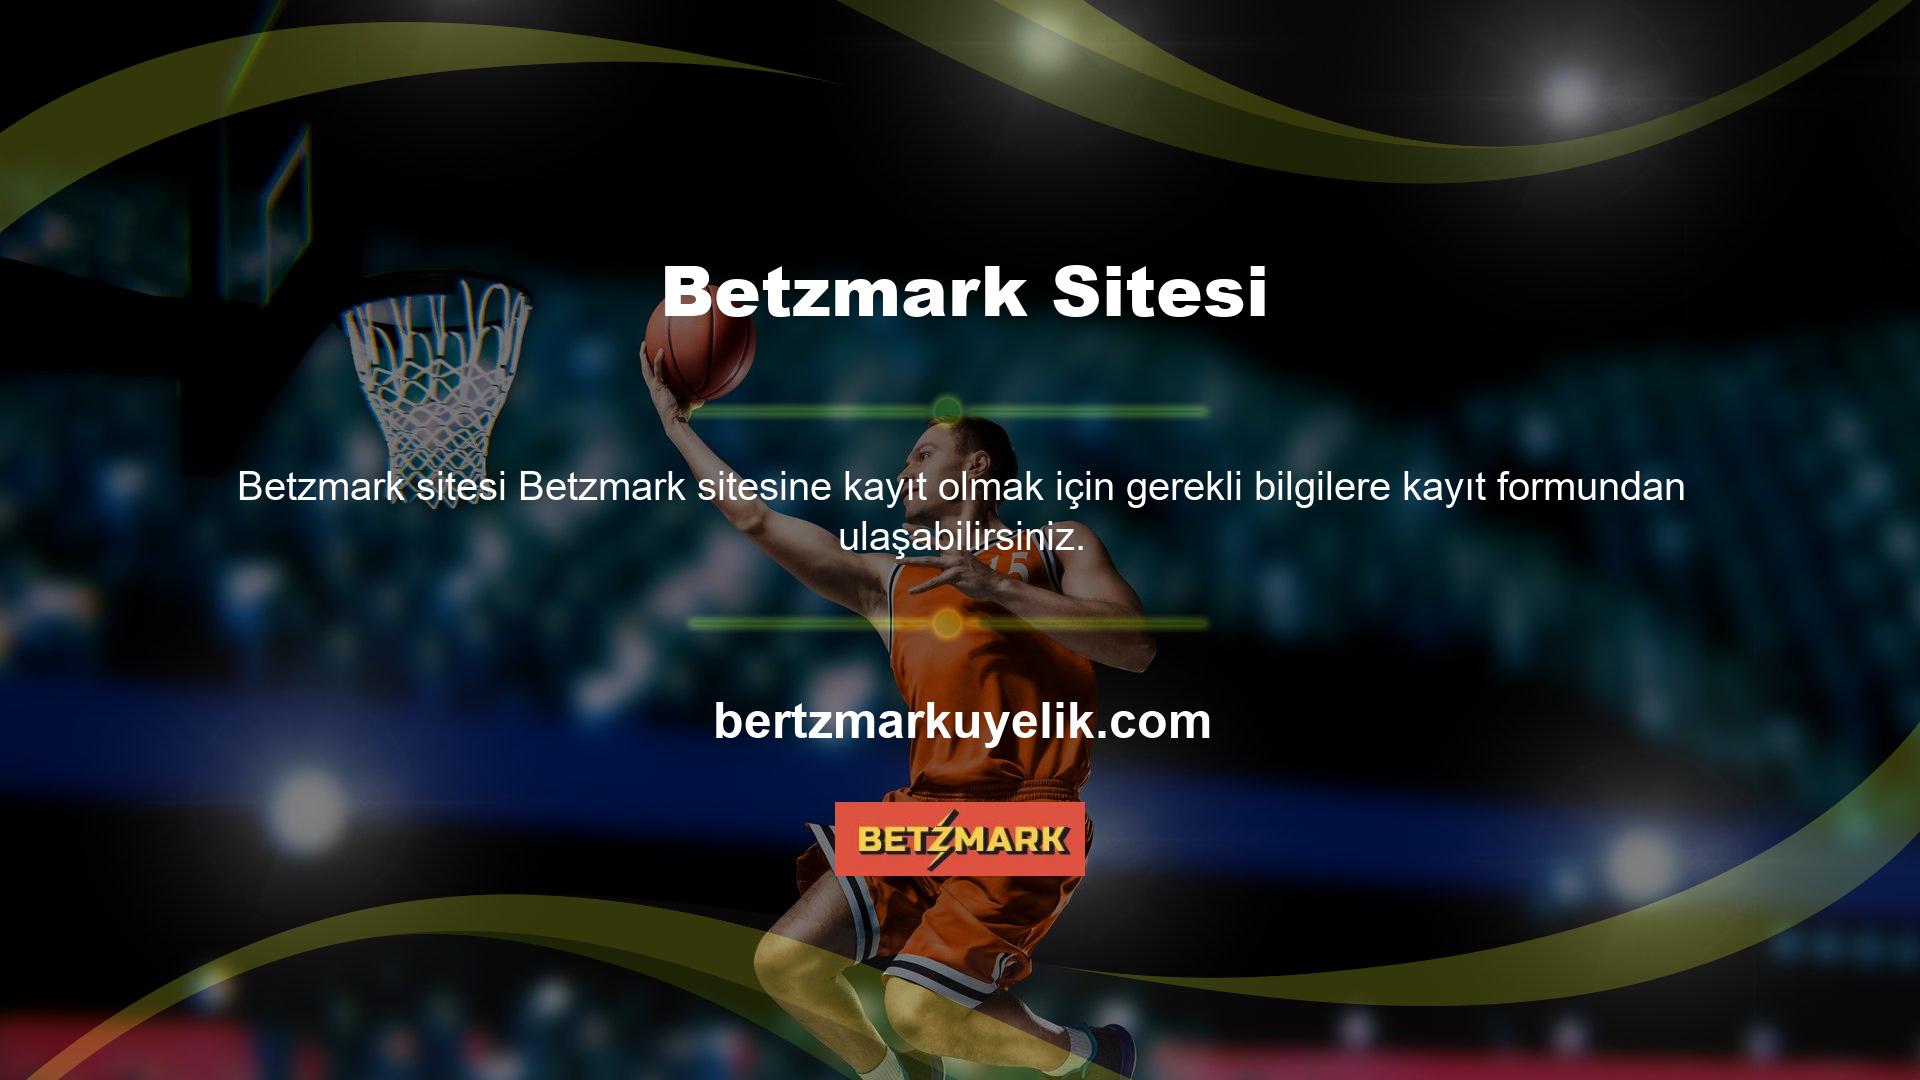 Betzmark kayıt formu web sitesinin işleyişinin önemli bir detayıdır